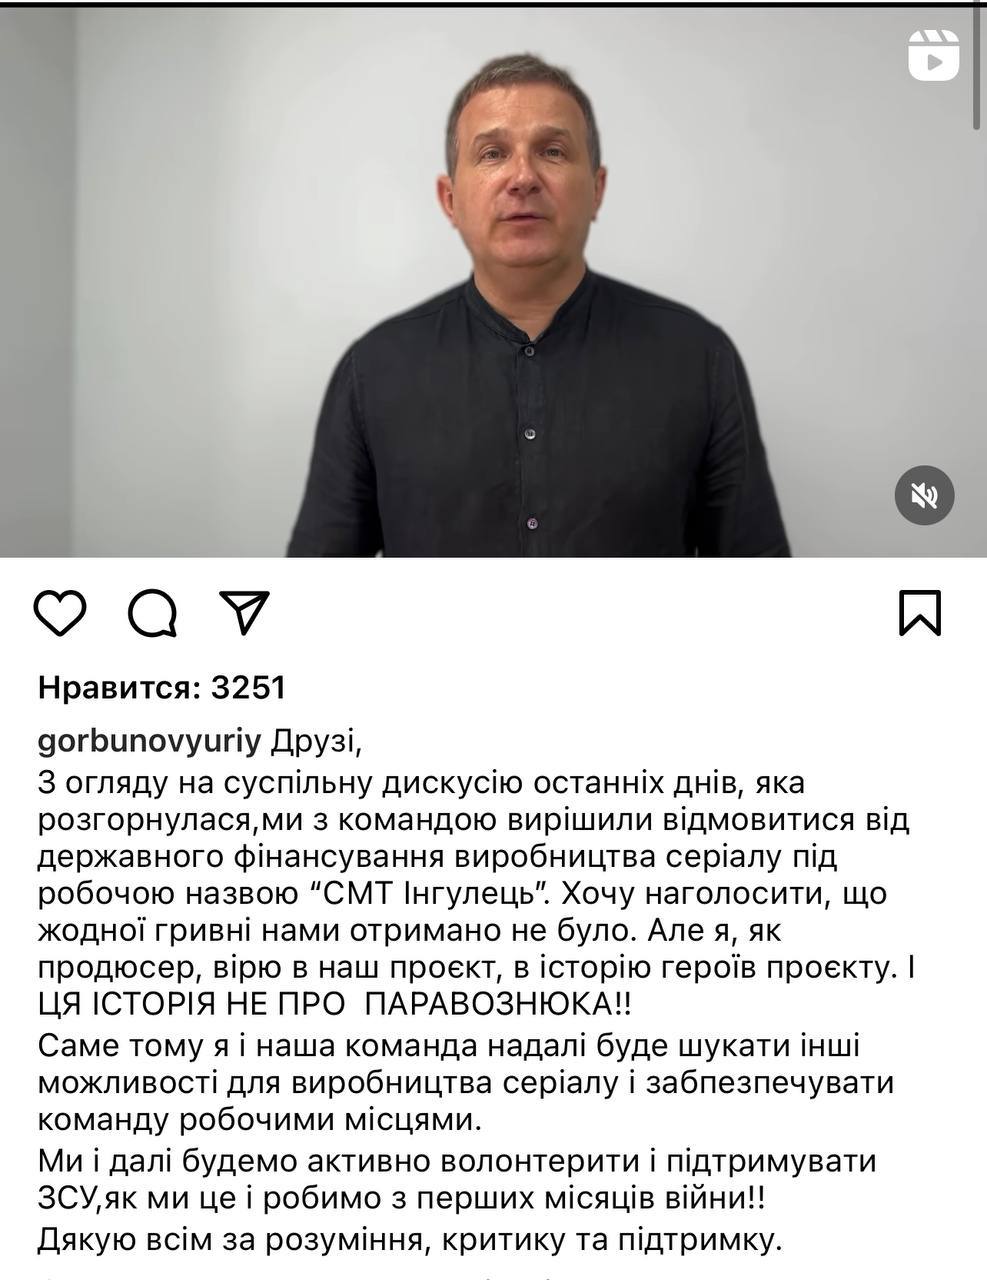 Горбунов отказался от госфинансирования сериала "ПГТ Ингулец"